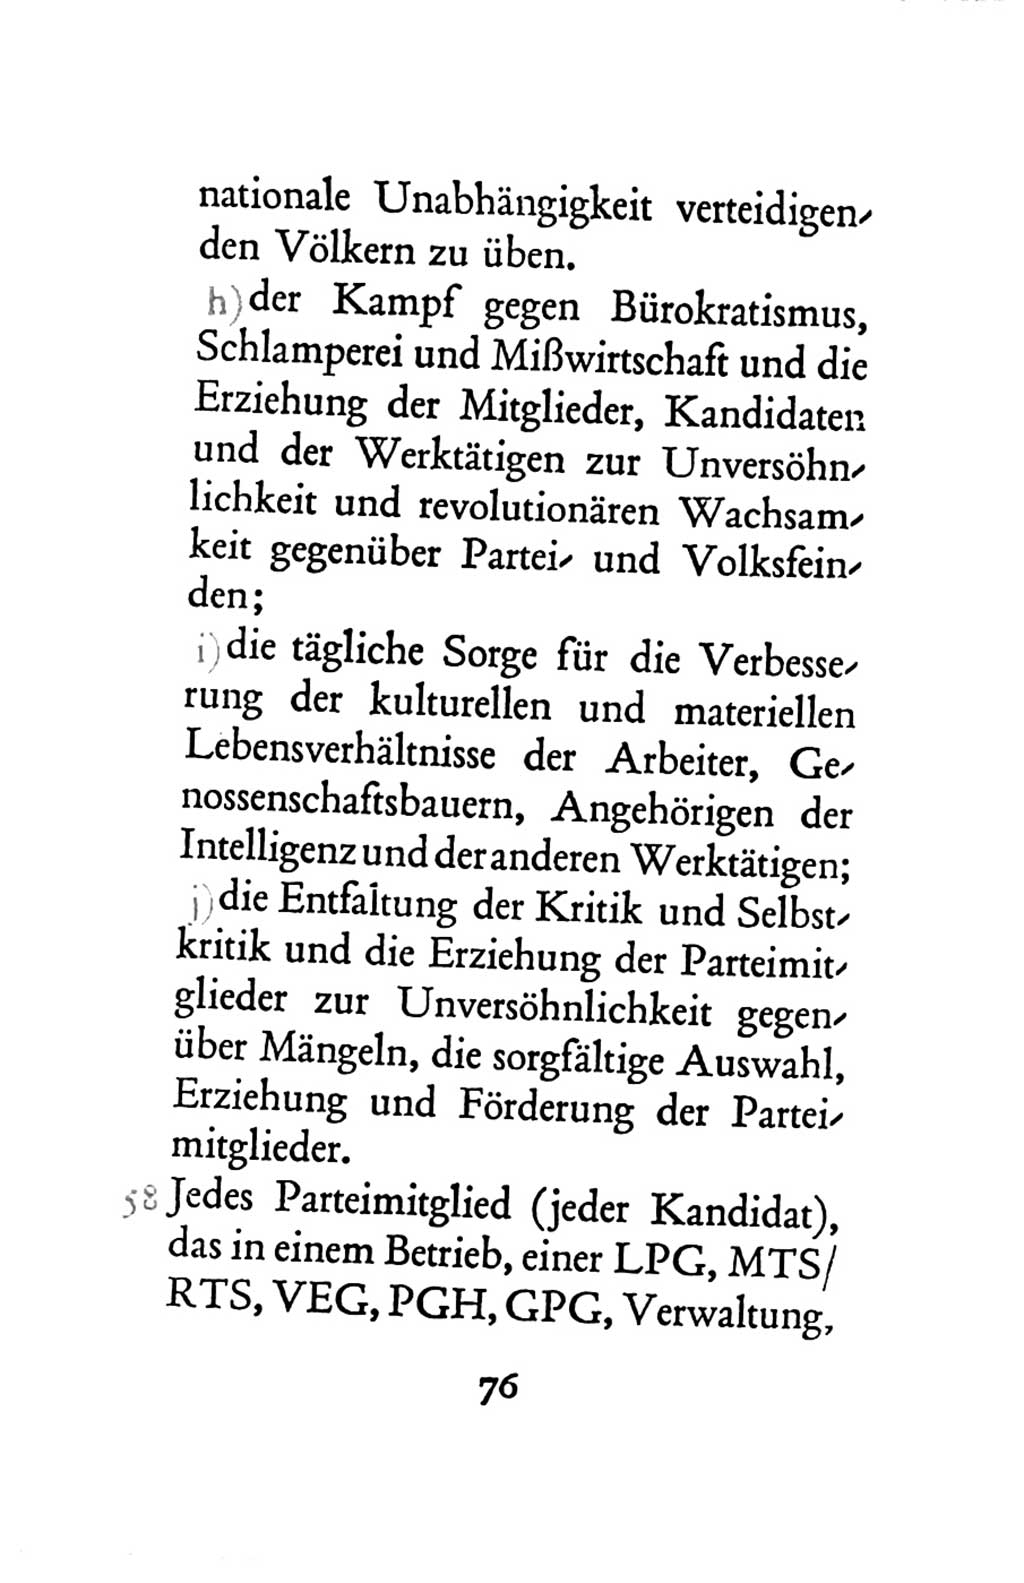 Statut der Sozialistischen Einheitspartei Deutschlands (SED) 1963, Seite 76 (St. SED DDR 1963, S. 76)